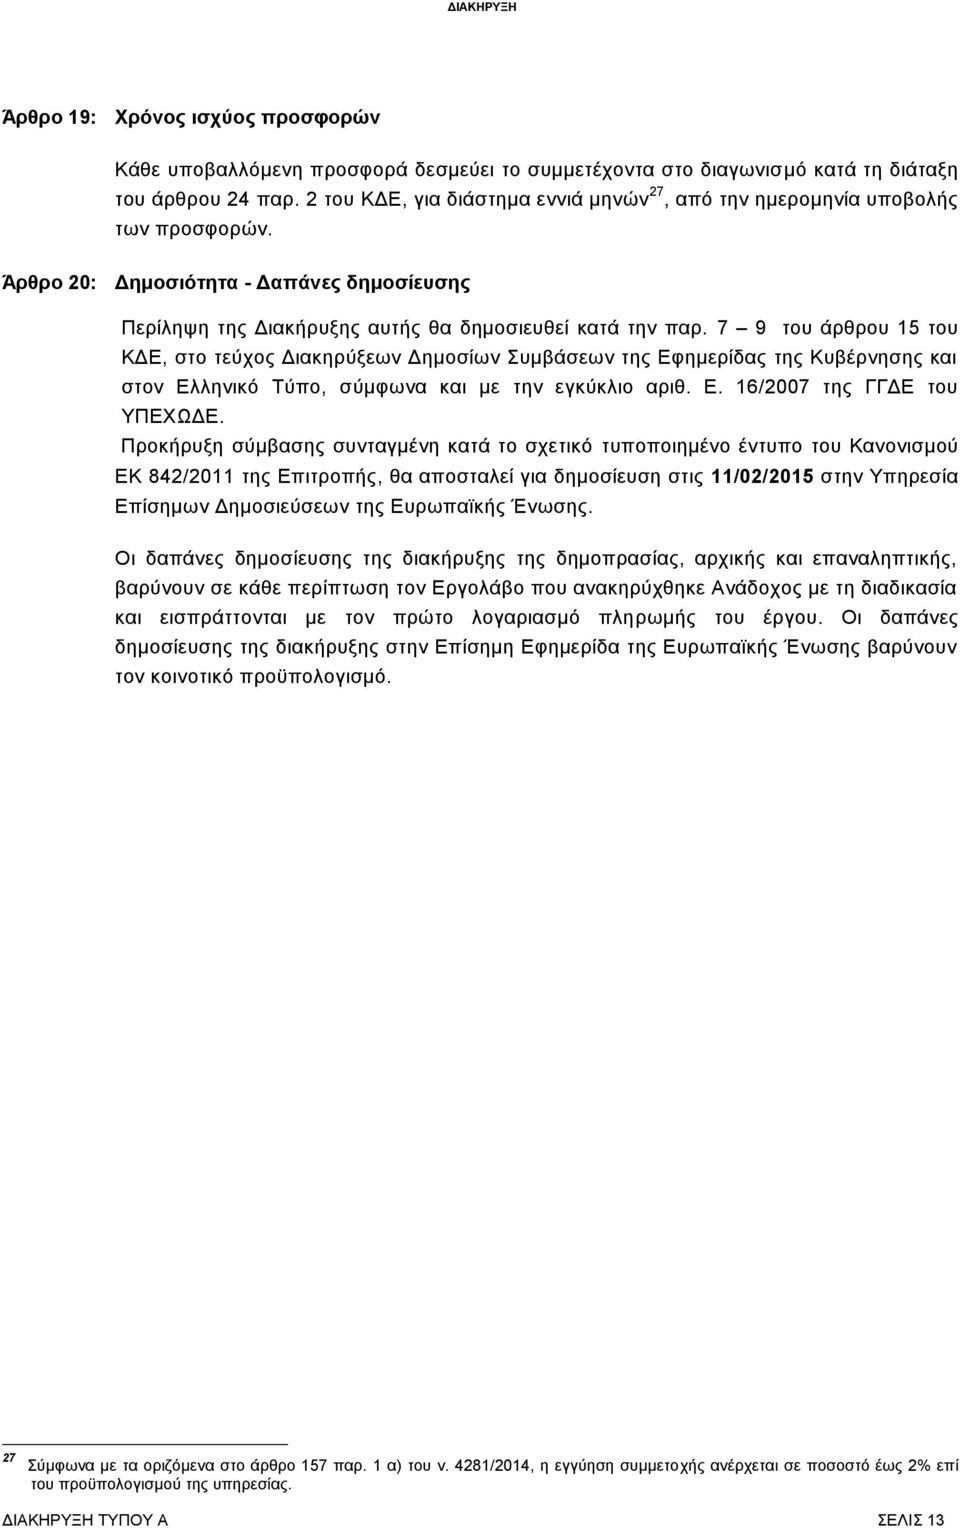 7 9 του άρθρου 15 του ΚΔΕ, στο τεύχος Διακηρύξεων Δημοσίων Συμβάσεων της Εφημερίδας της Κυβέρνησης και στον Ελληνικό Τύπο, σύμφωνα και με την εγκύκλιο αριθ. Ε. 16/2007 της ΓΓΔΕ του ΥΠΕΧΩΔΕ.